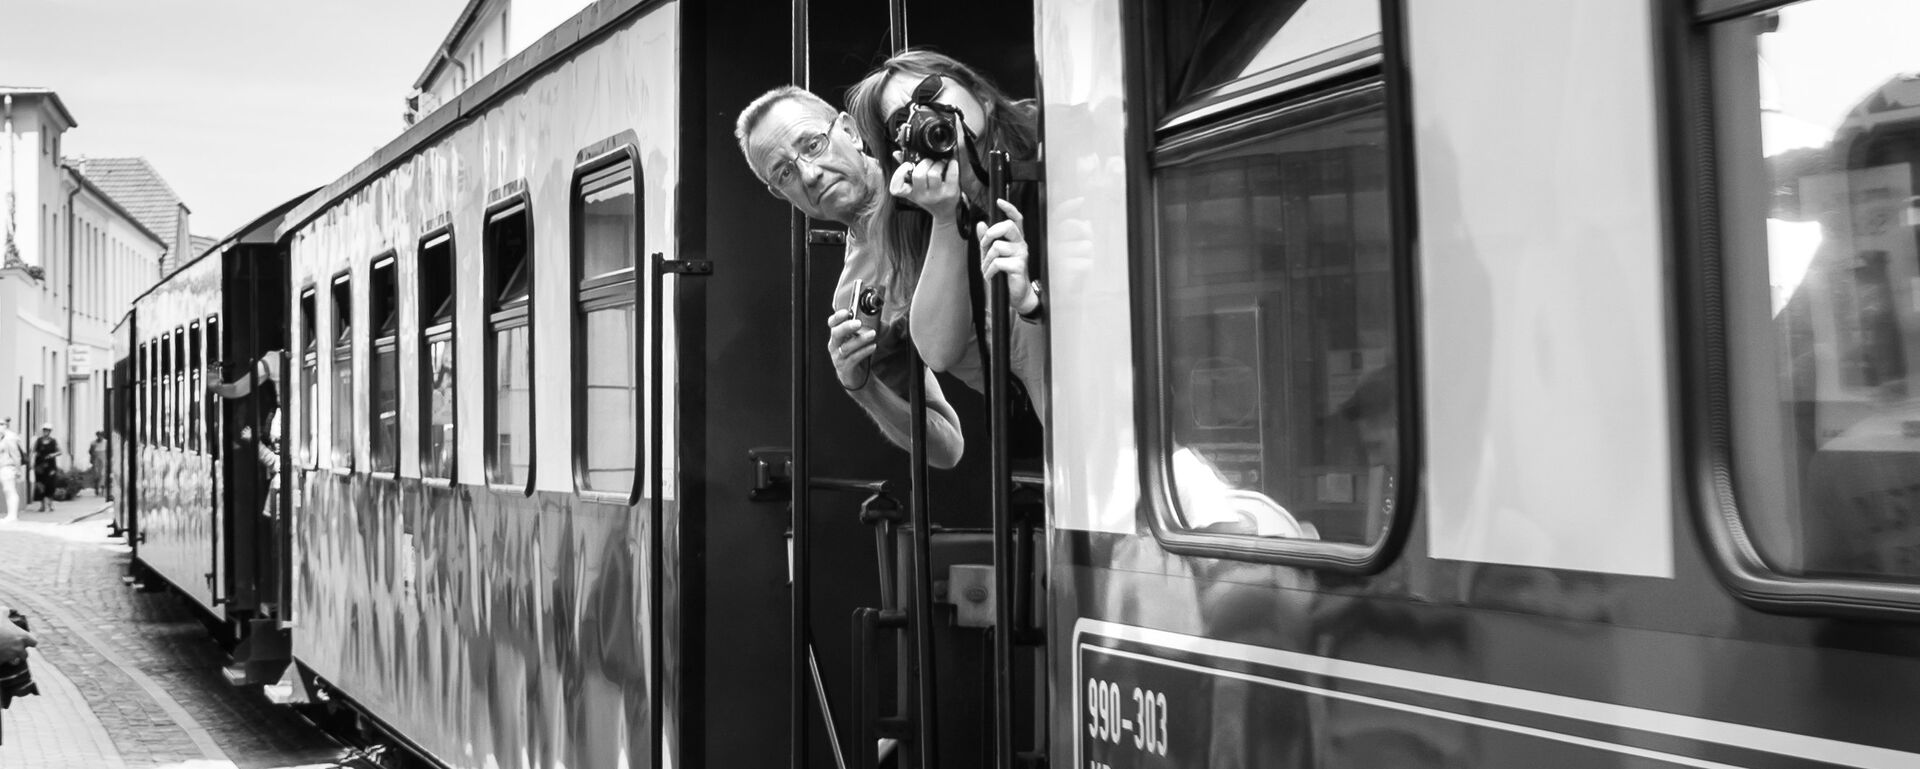 Люди фотографируют из поезда - Sputnik Латвия, 1920, 07.12.2018